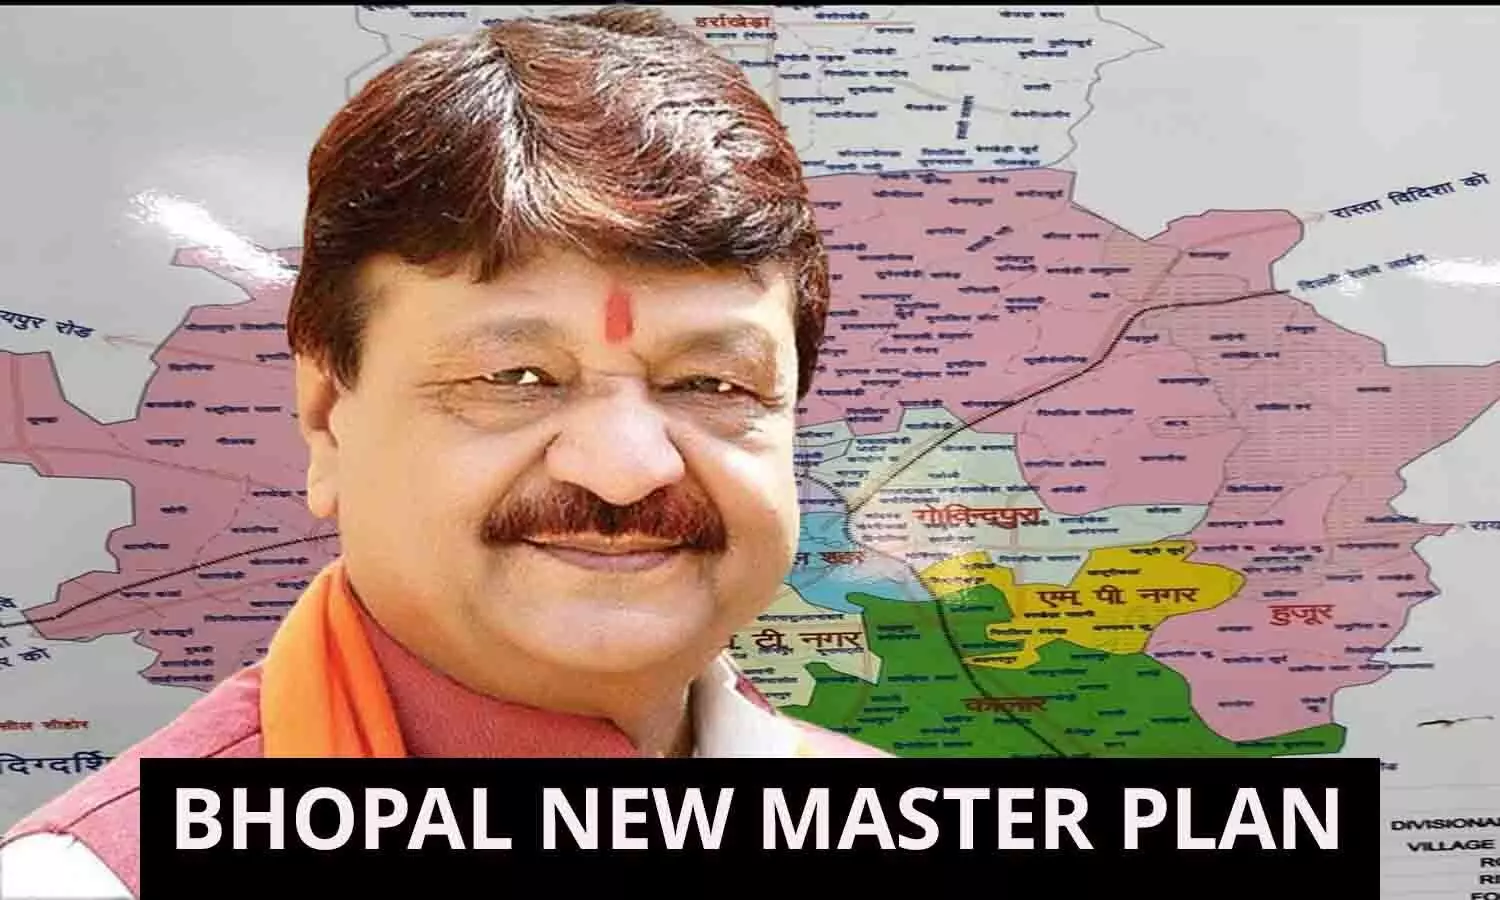 BHOPAL NEW MASTER PLAN: शिवराज सिंह का ड्राफ्ट कैलाश विजयवर्गीय ने किया रिजेक्ट, भोपाल मास्टर प्लॉन का नया ड्रॉफ्ट तैयार